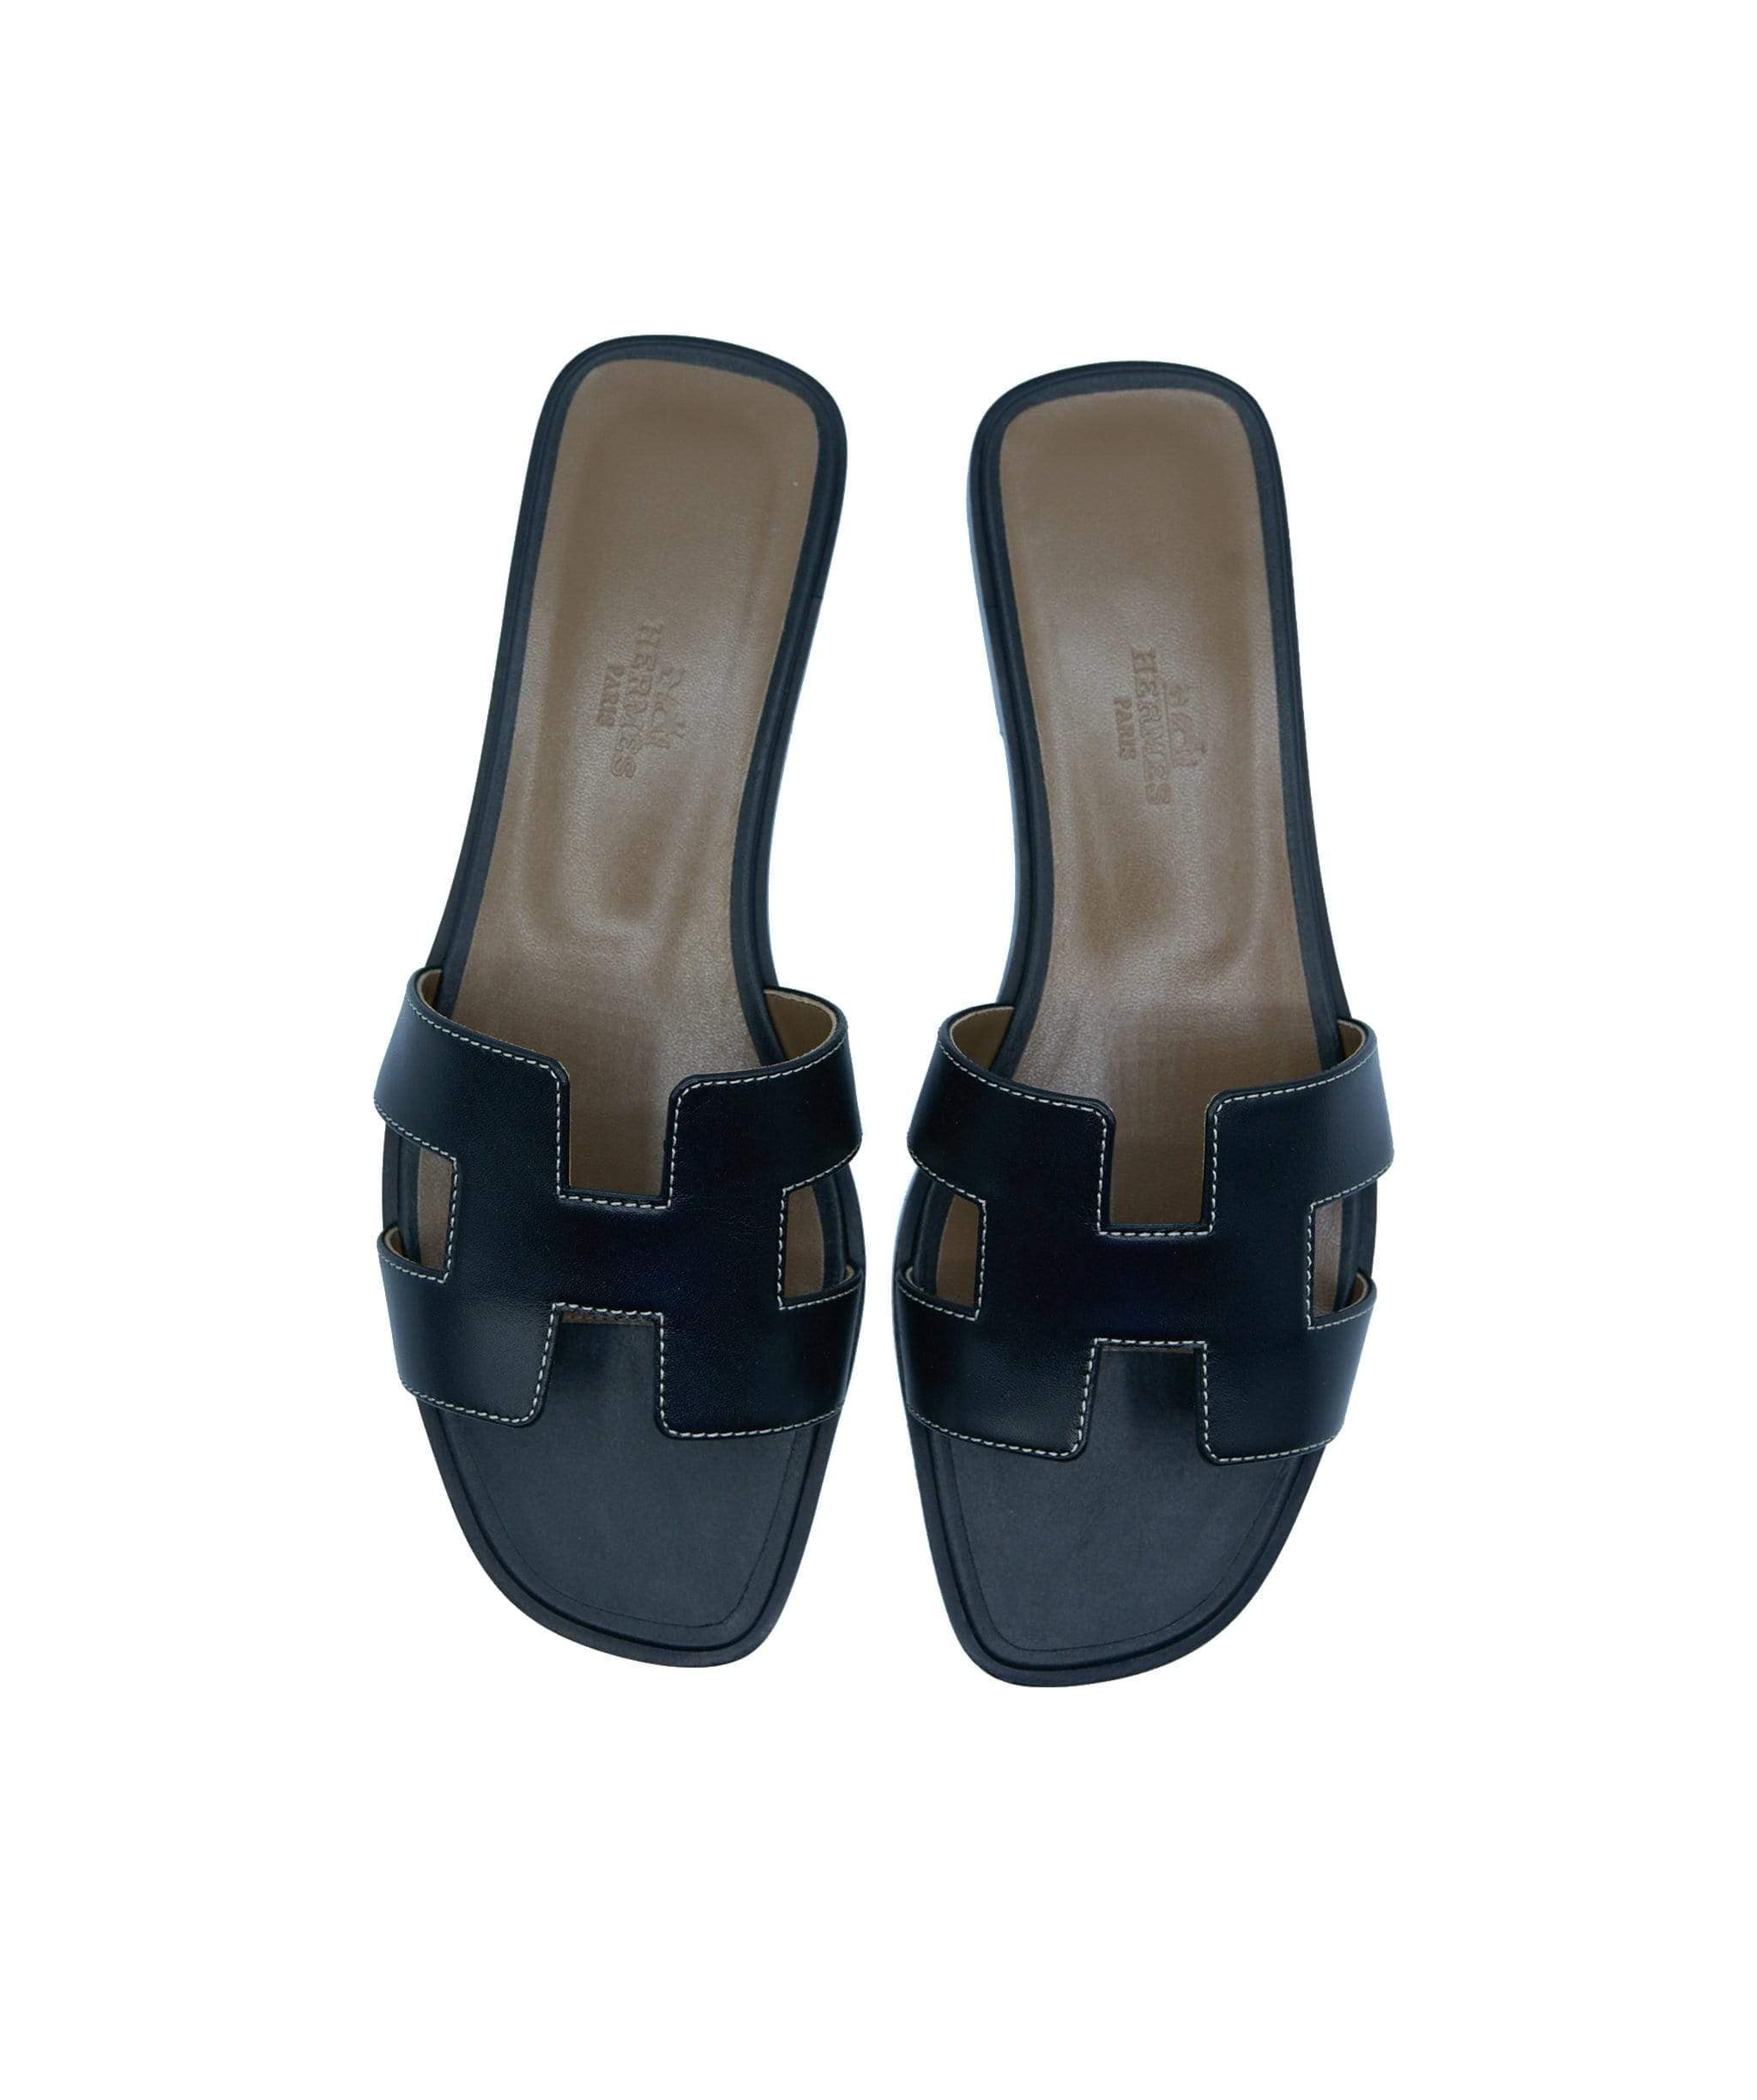 Hermes sandals 36.5 – LuxuryPromise